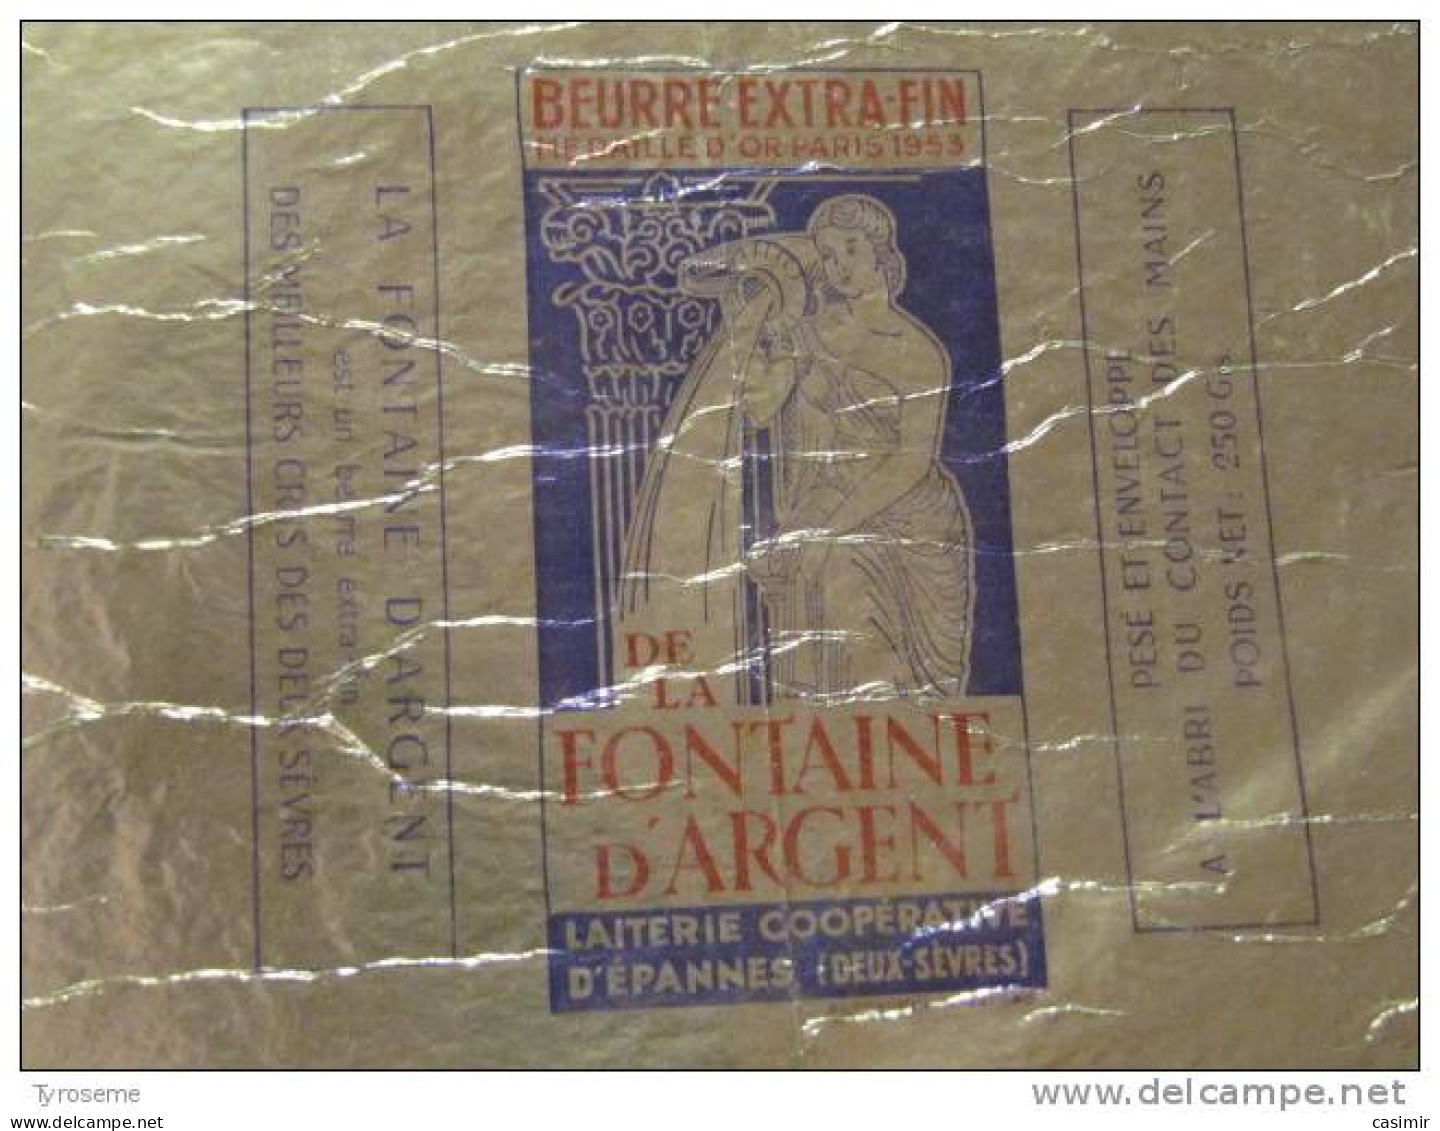 T741 / étiquette D'emballage Beurre De La Fontaine D'Argent à Epannes - Deux-Sèvres - Rechnungen